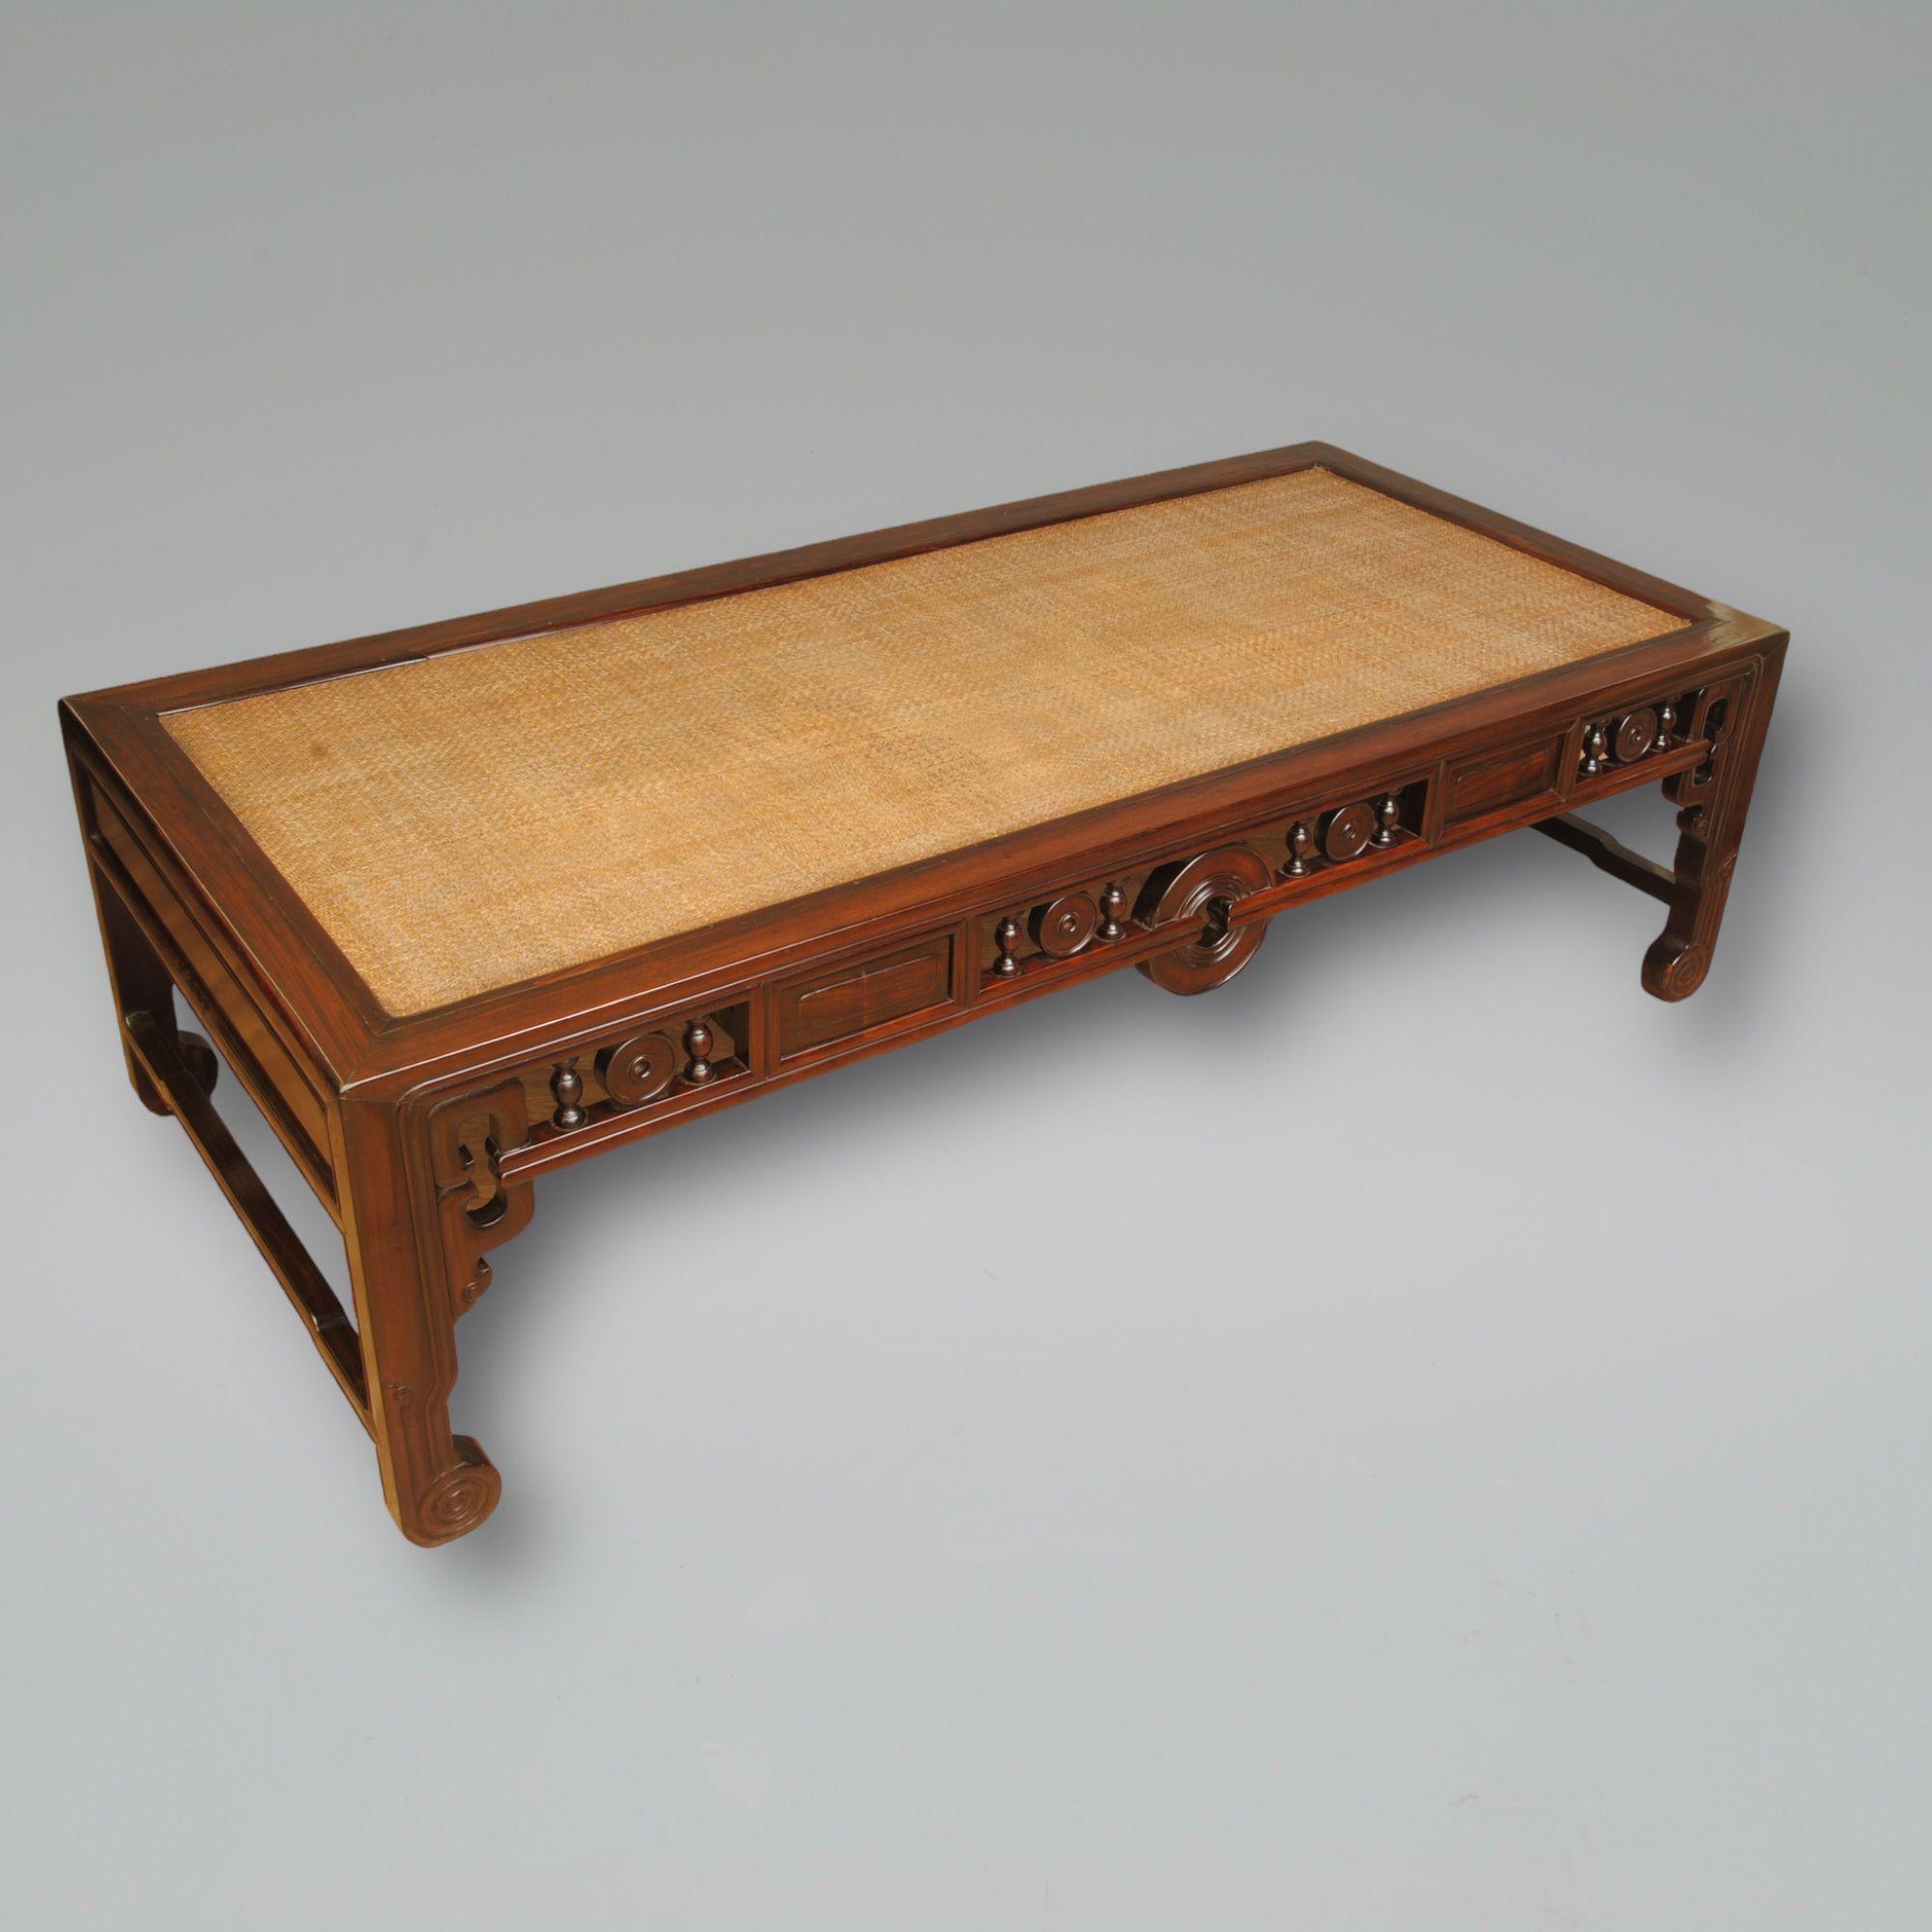 Une superbe table basse ou un lit de jour en bois dur chinois ferait une très grande table basse. Le plateau en rotin est en bon état d'origine et la couleur et la patine du bois sont très belles.